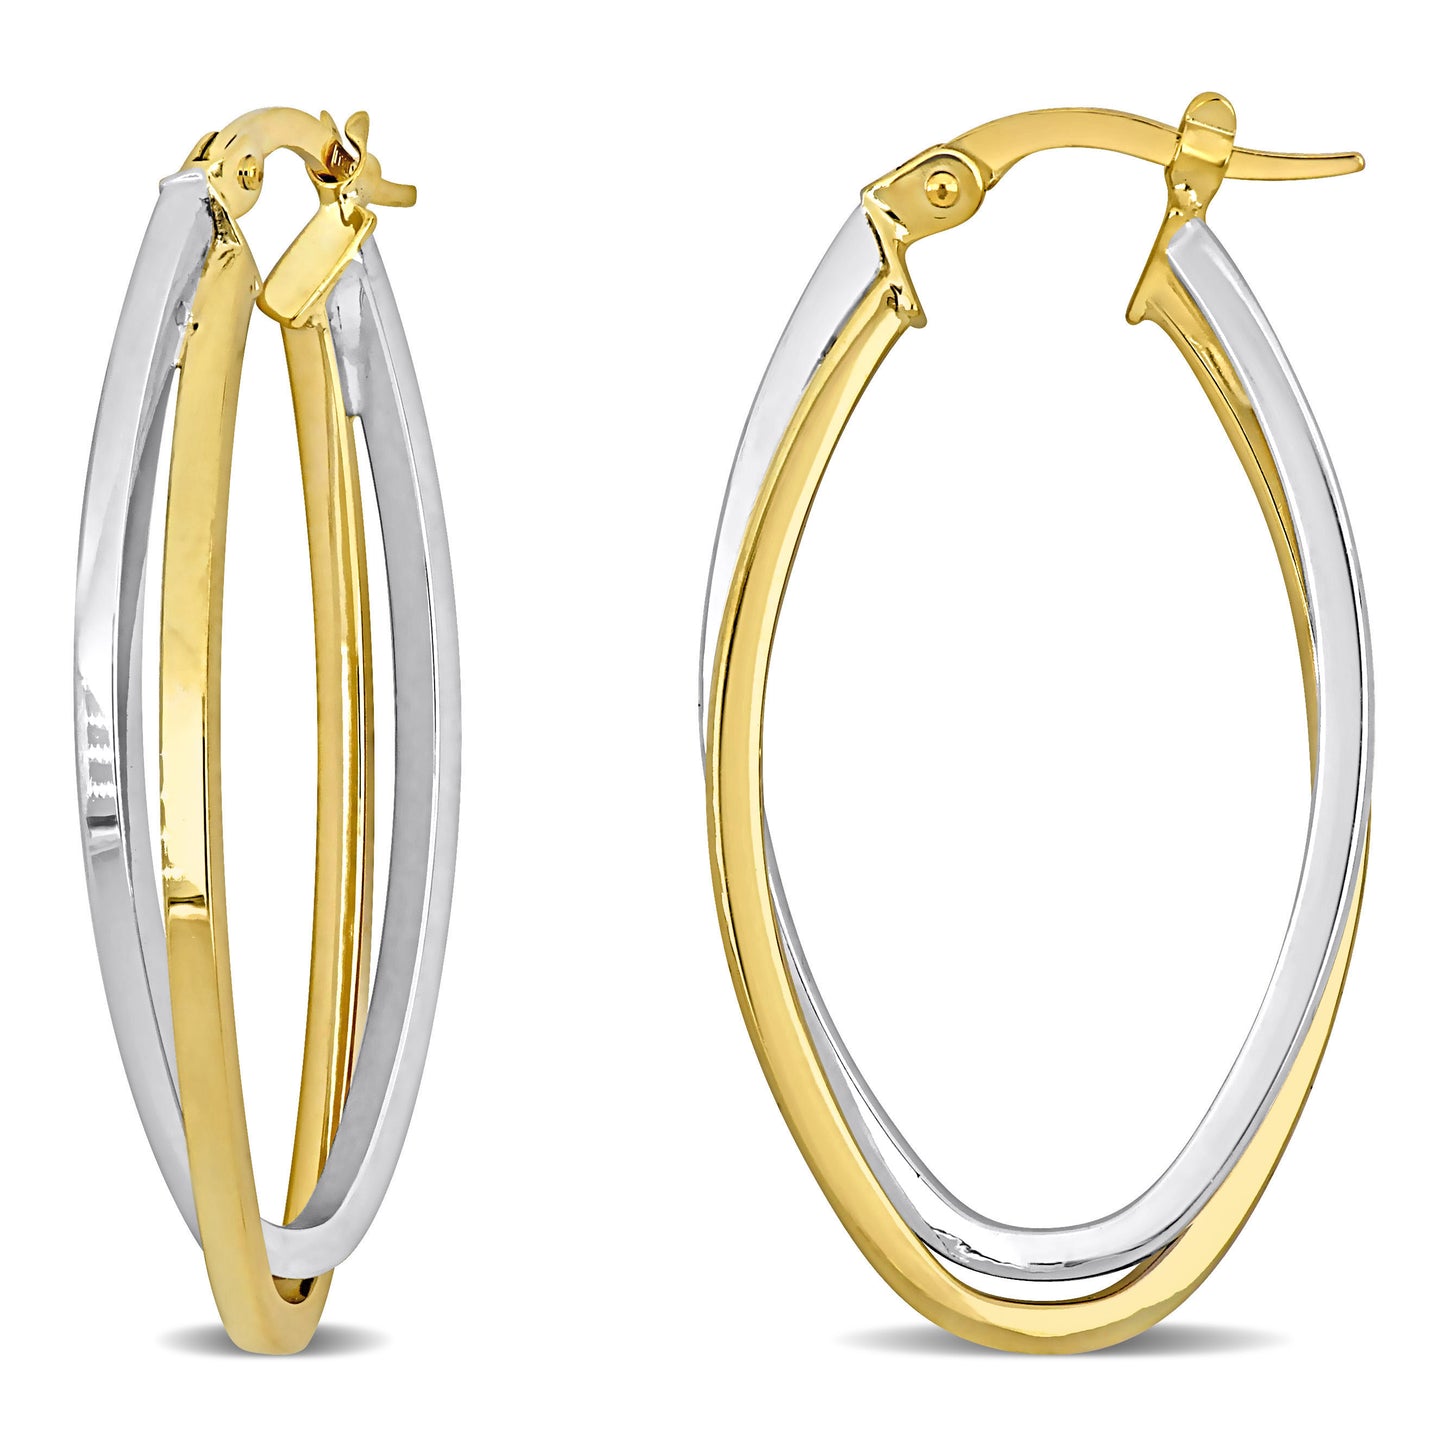 Oval Hoop Earrings in 10k 2-Tone Gold